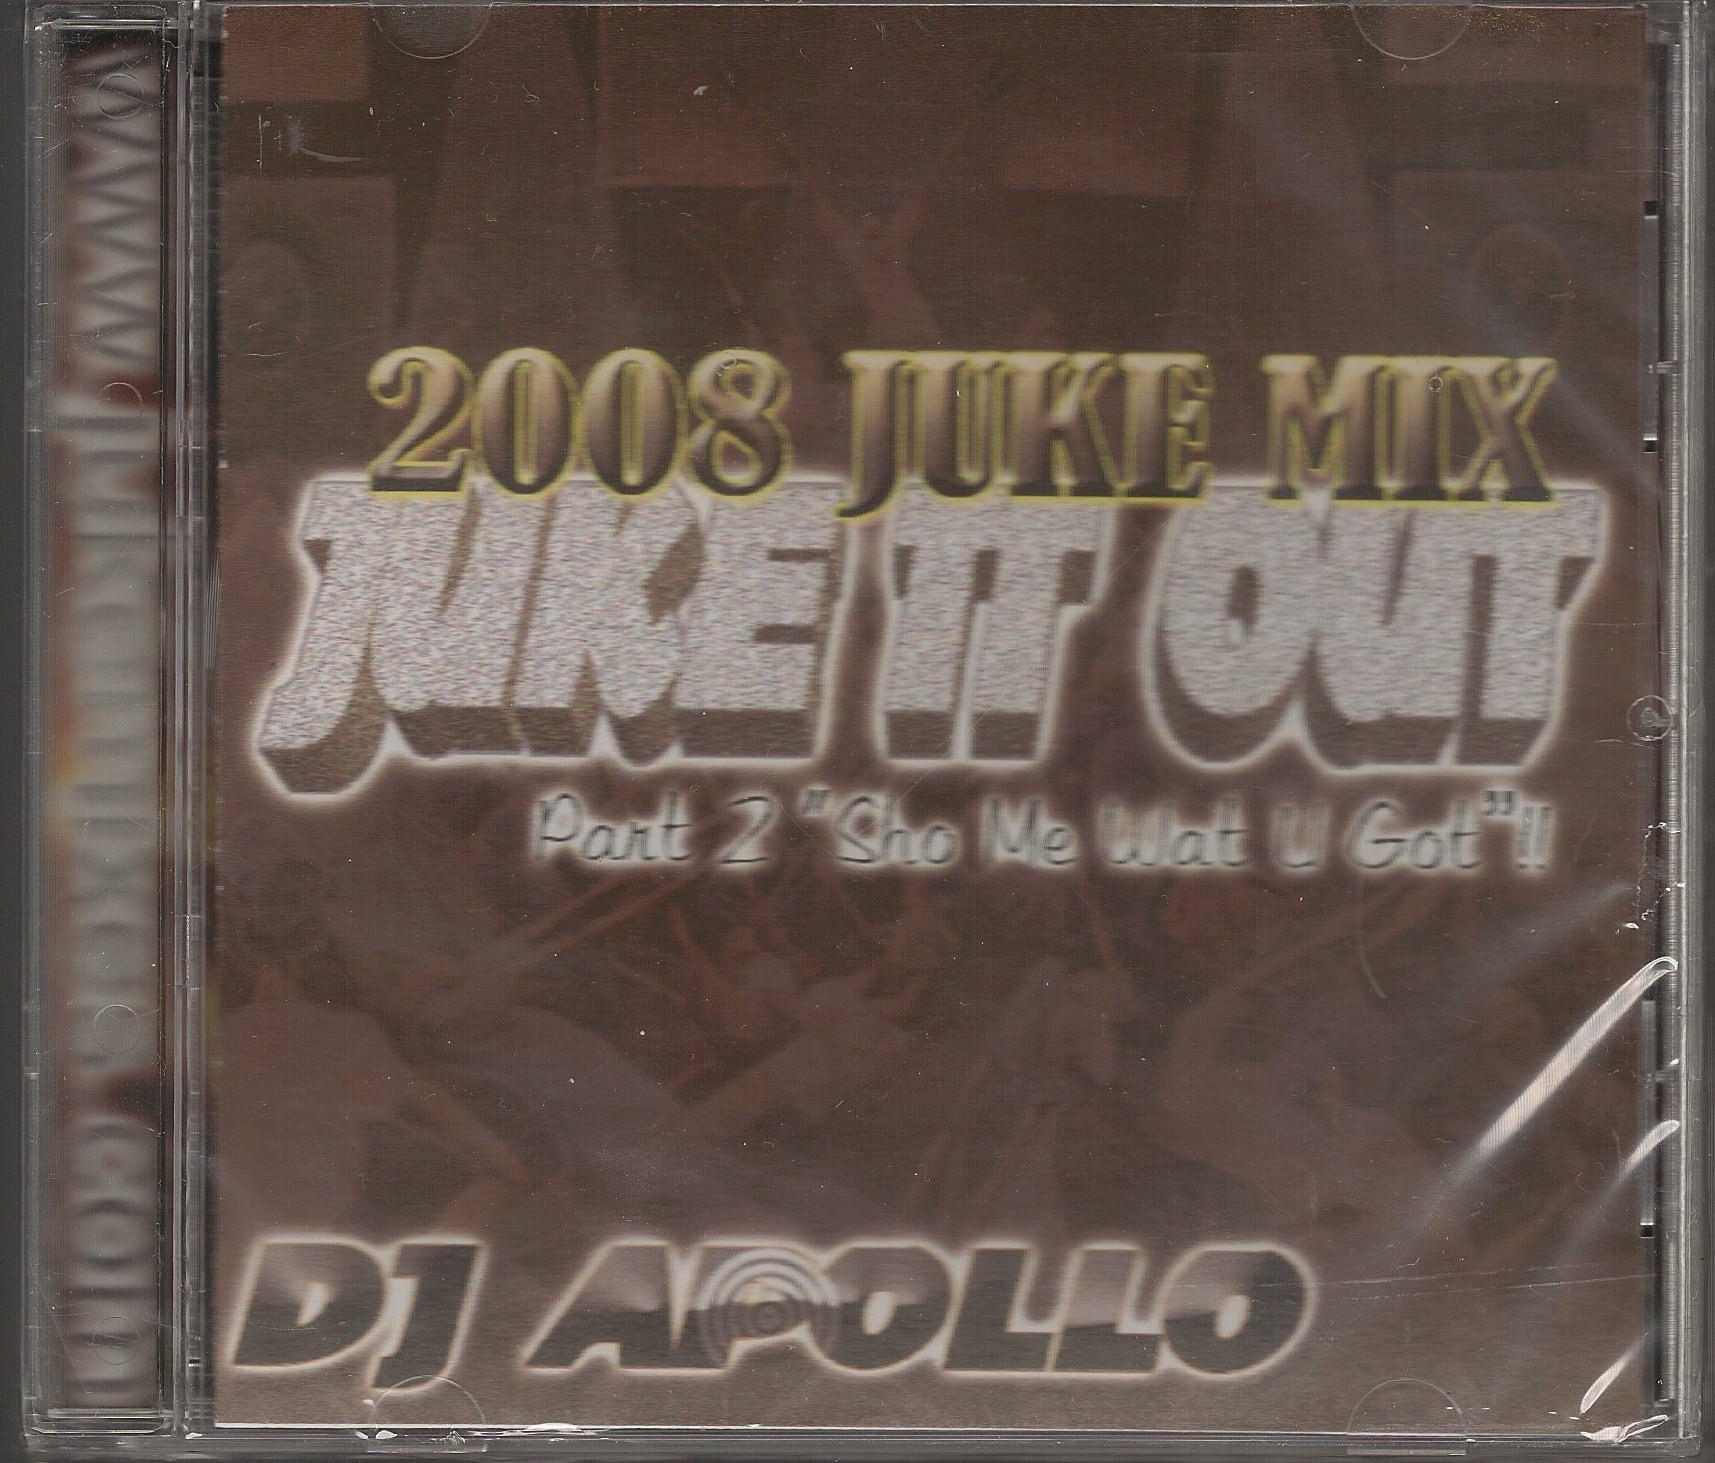 DJ APOLLO - JUKE IT OUT PART 2 - 2008 JUKE MIX